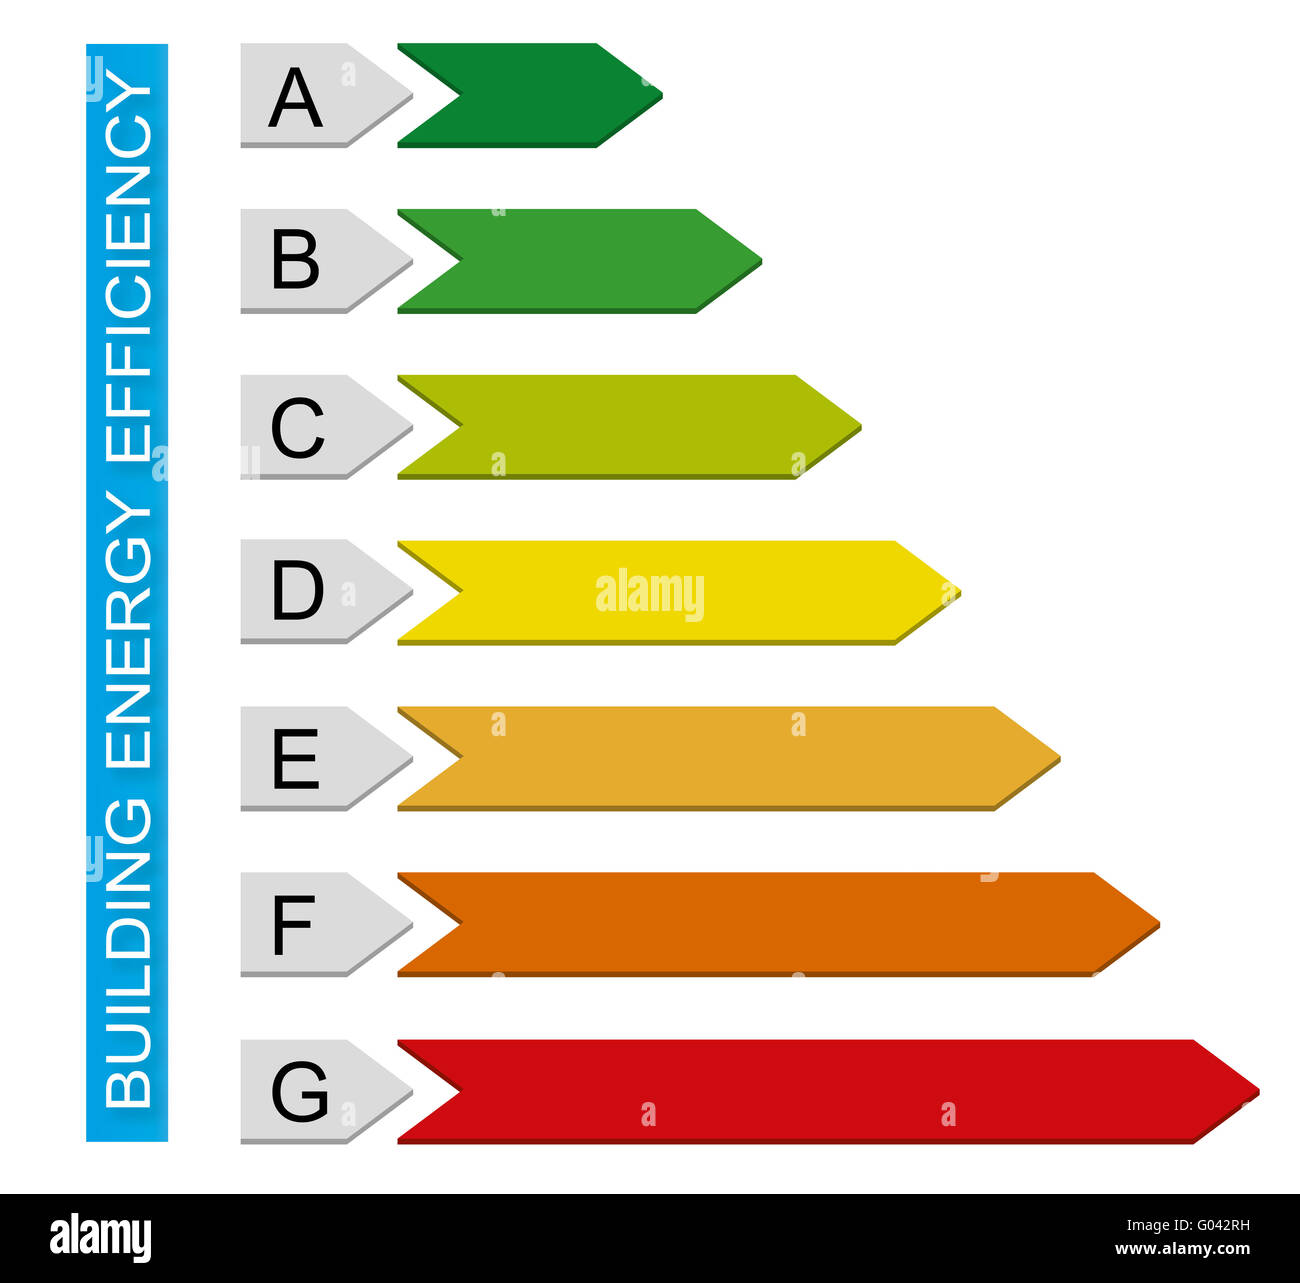 Tableau de l'efficacité énergétique des bâtiments Banque D'Images